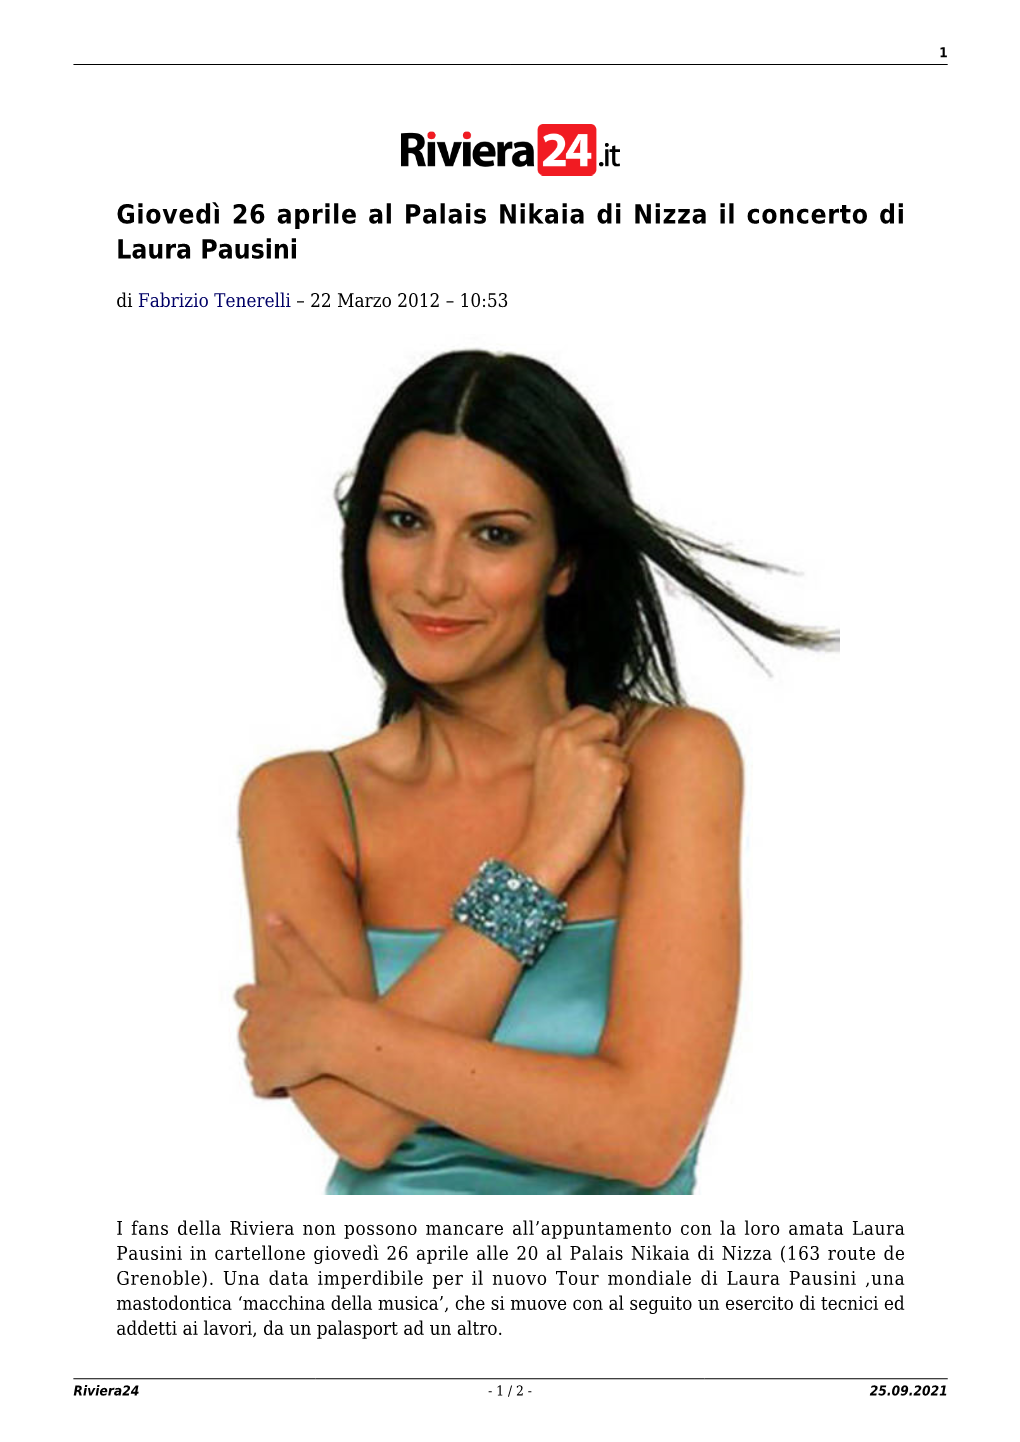 Giovedì 26 Aprile Al Palais Nikaia Di Nizza Il Concerto Di Laura Pausini